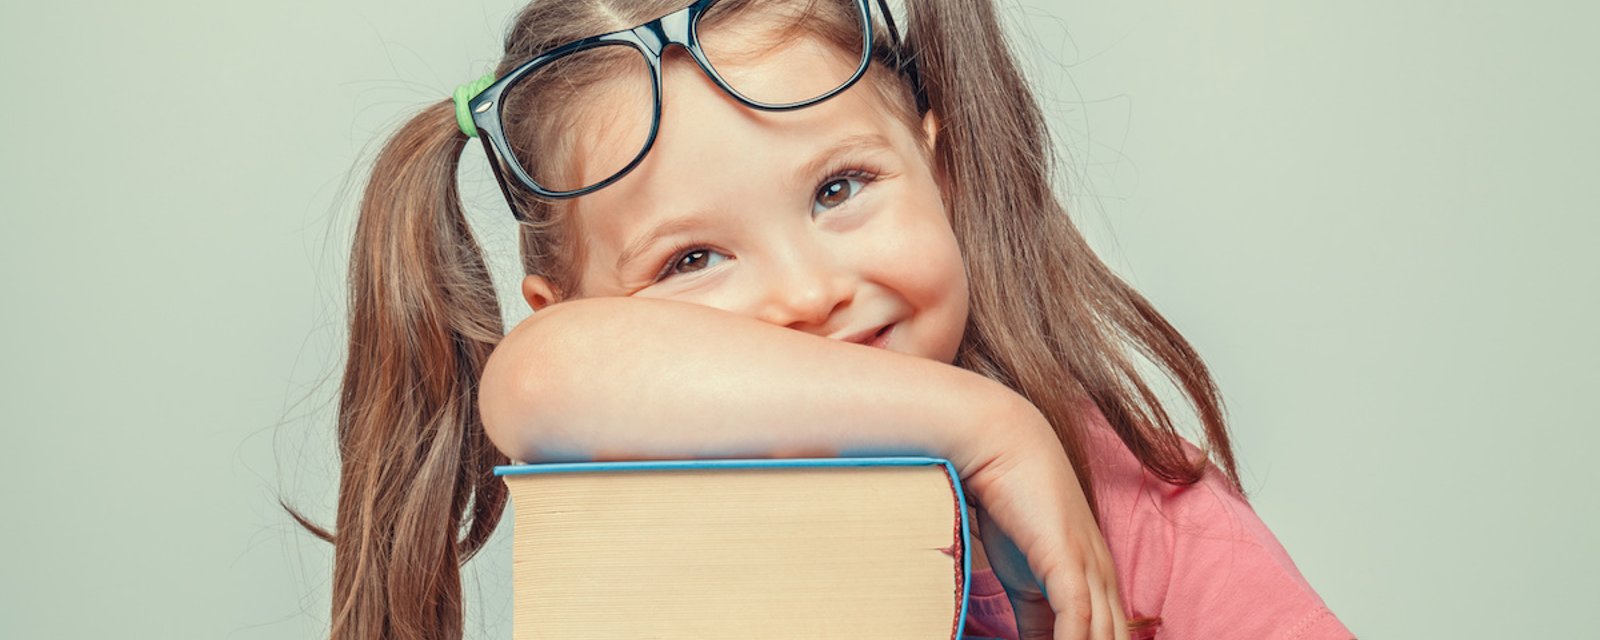 10 raisons pour recommencer à lire des livres immédiatement!